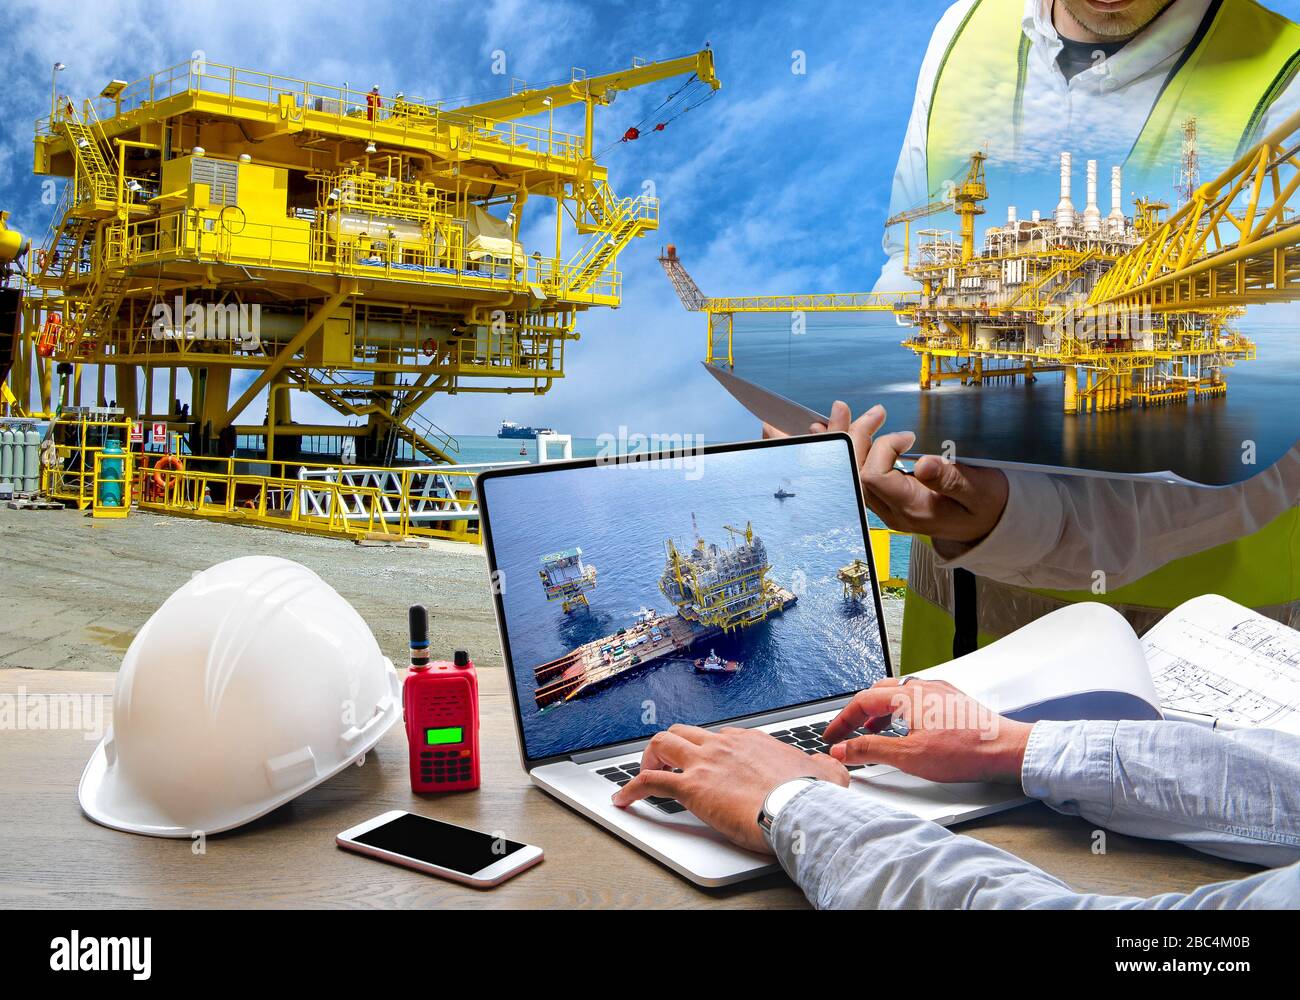 Immagine del concetto di sicurezza delle attrezzature da lavoro, industriale e industriale per lavori di perforazione e del settore dei trasporti per installazioni offshore Foto Stock